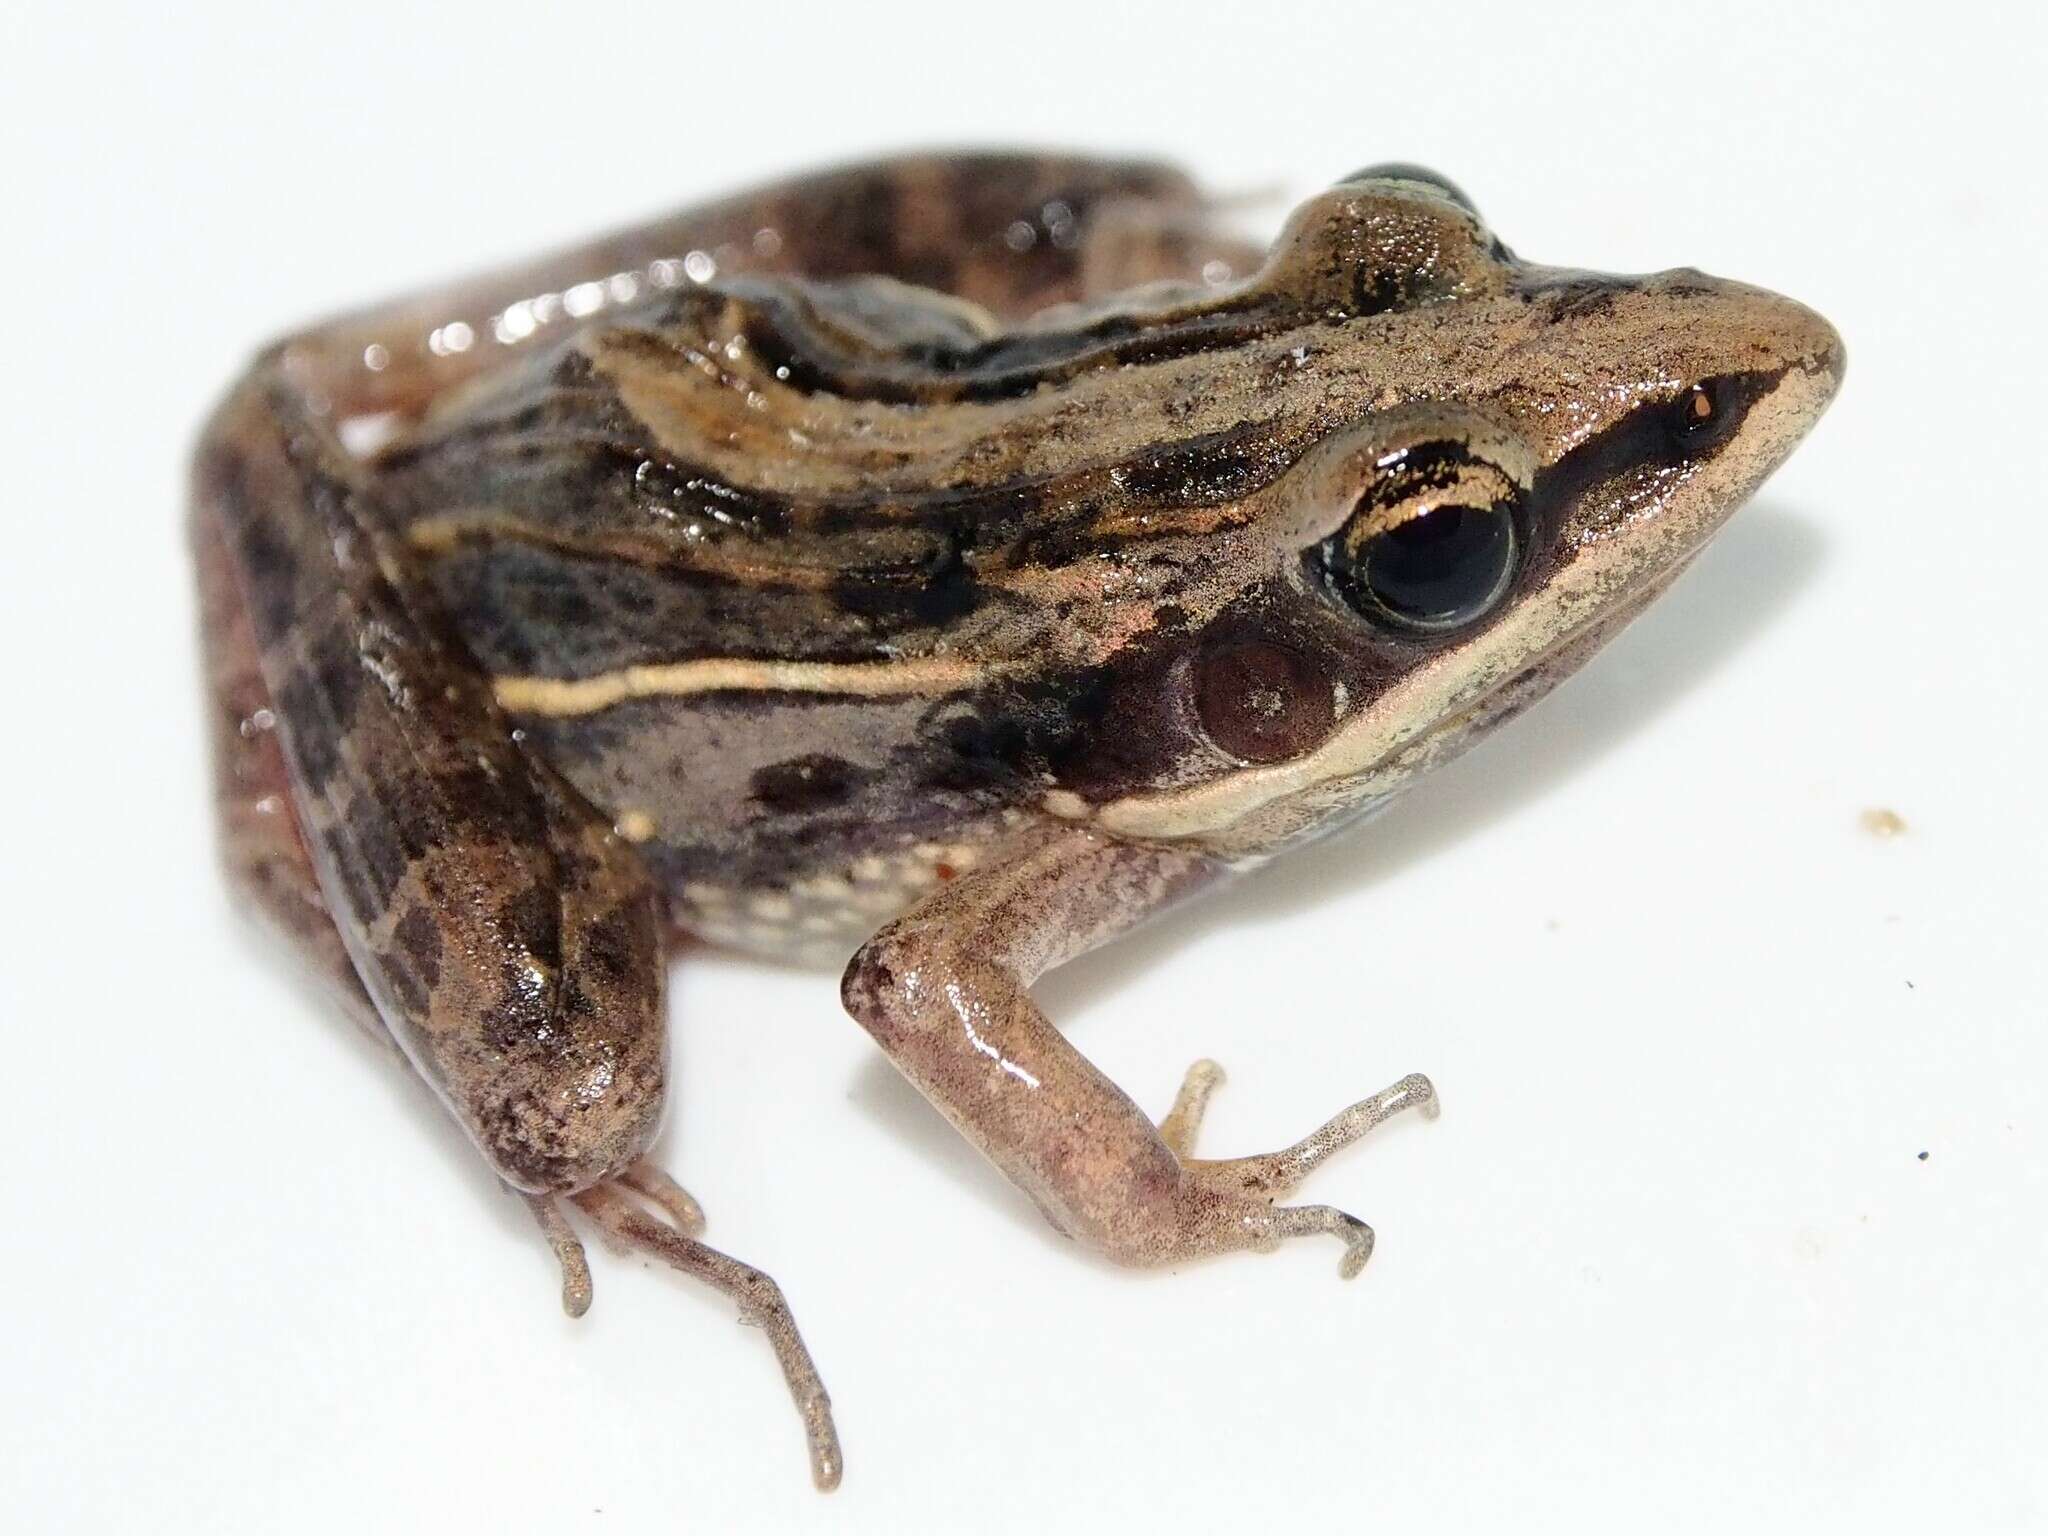 Image of Lukula grassland frog